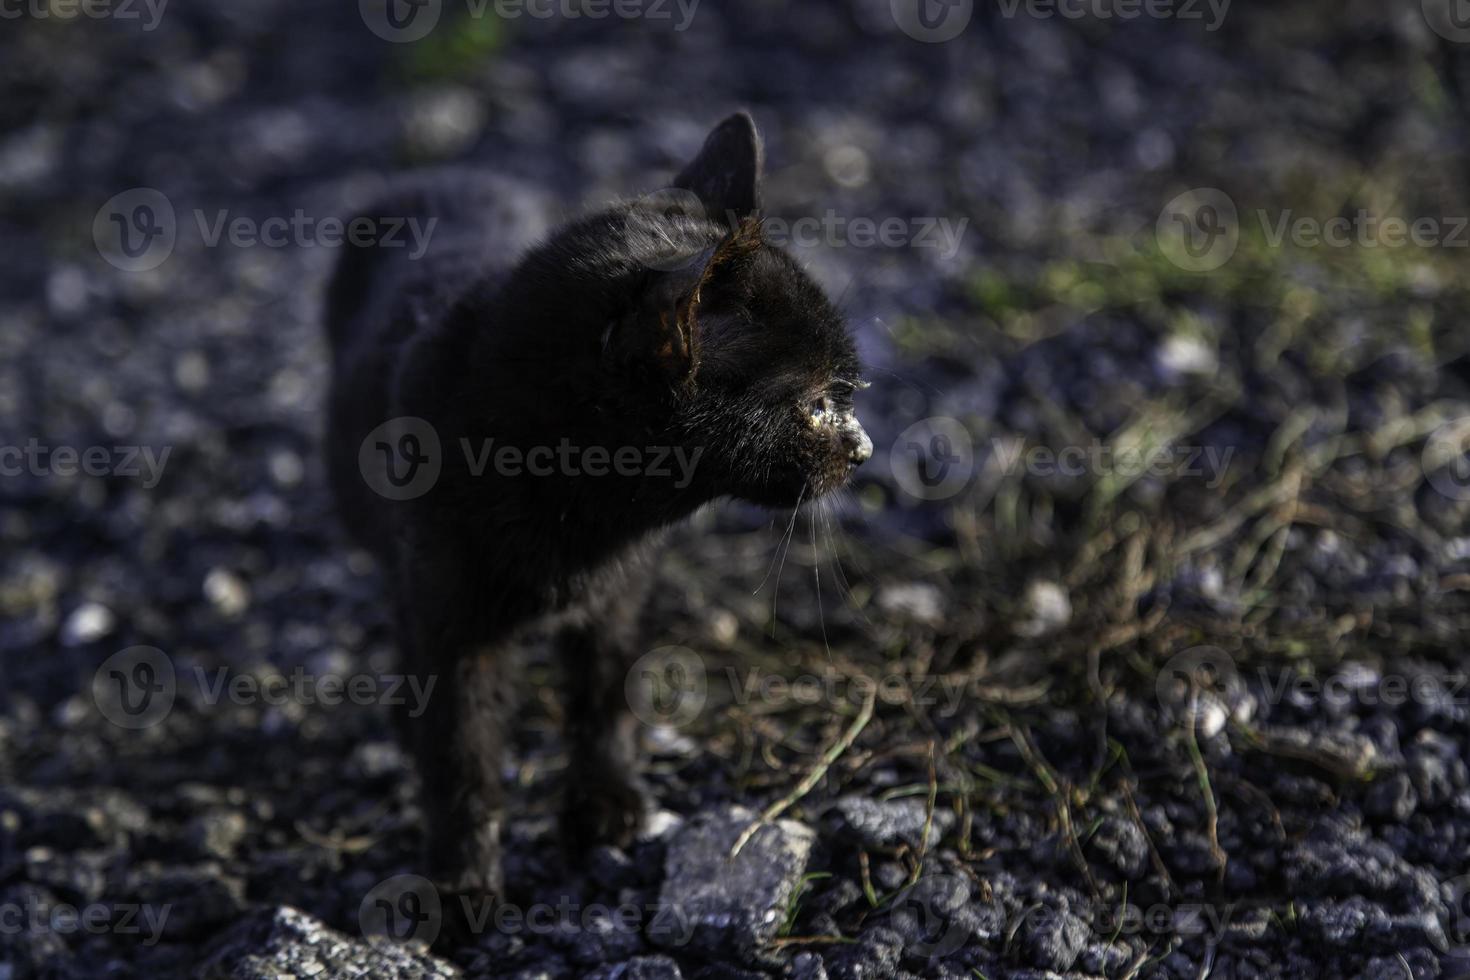 svart katt på gatan foto